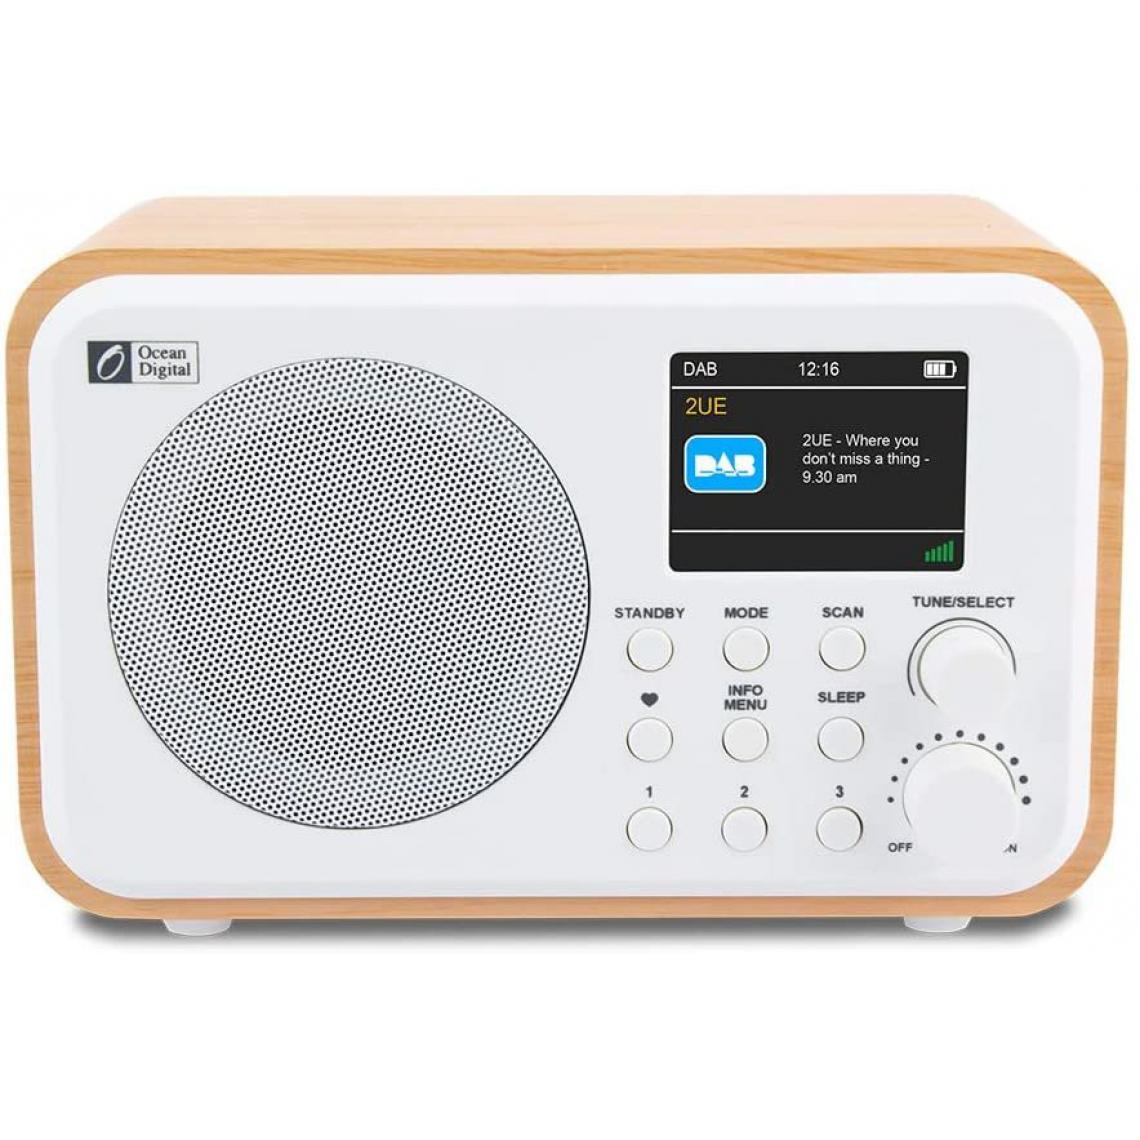 Chrono - Ocean Digital Radio Numérique Portable Dab + / Dab/FM avec Batterie Rechargeable,Affichage Couleur 2,4", Boîtier en Bois,blanc - Enceintes Hifi